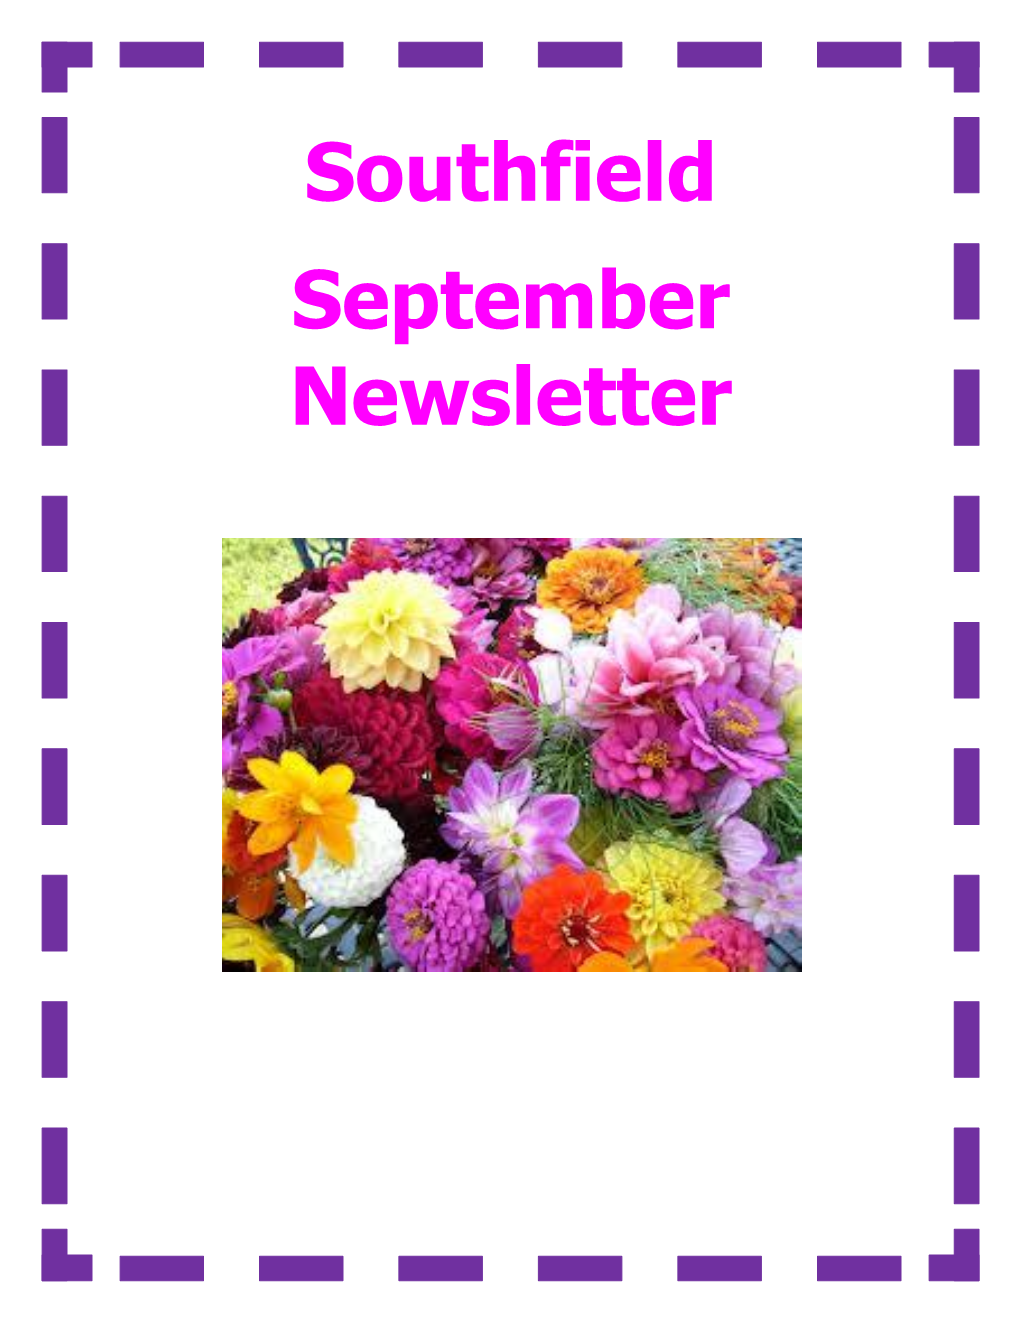 Southfield September Newsletter